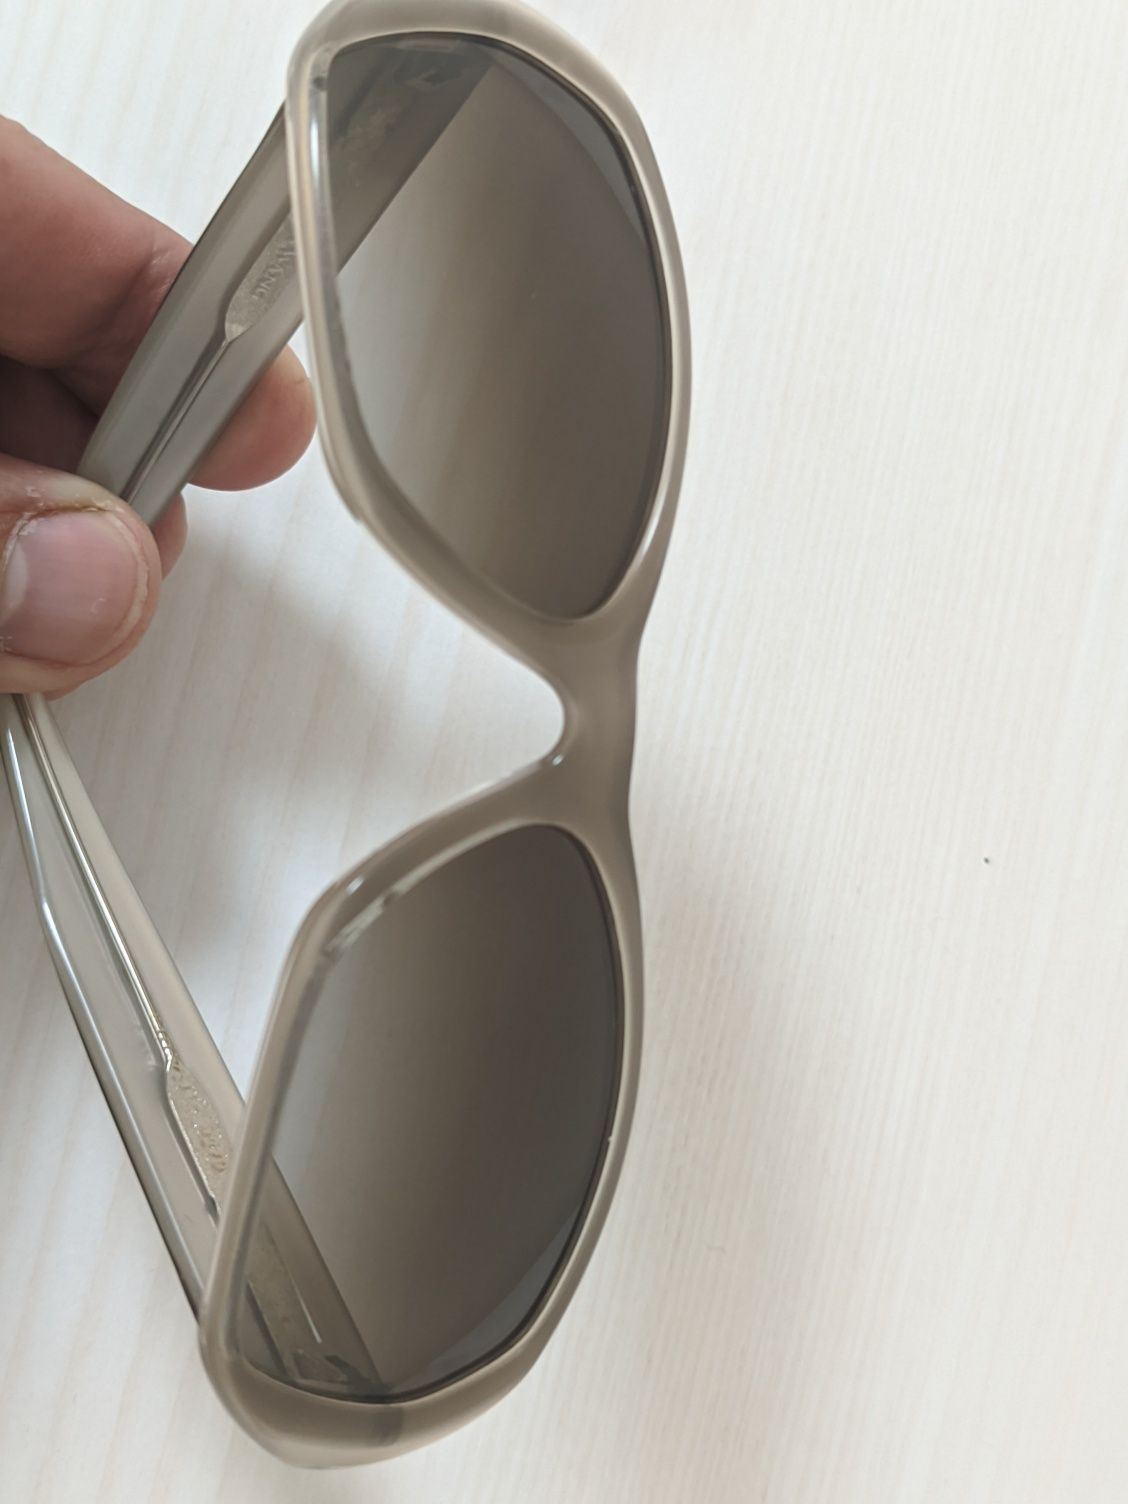 Коллекционные солнцезащитные очки Vera Wang V270 оригинал